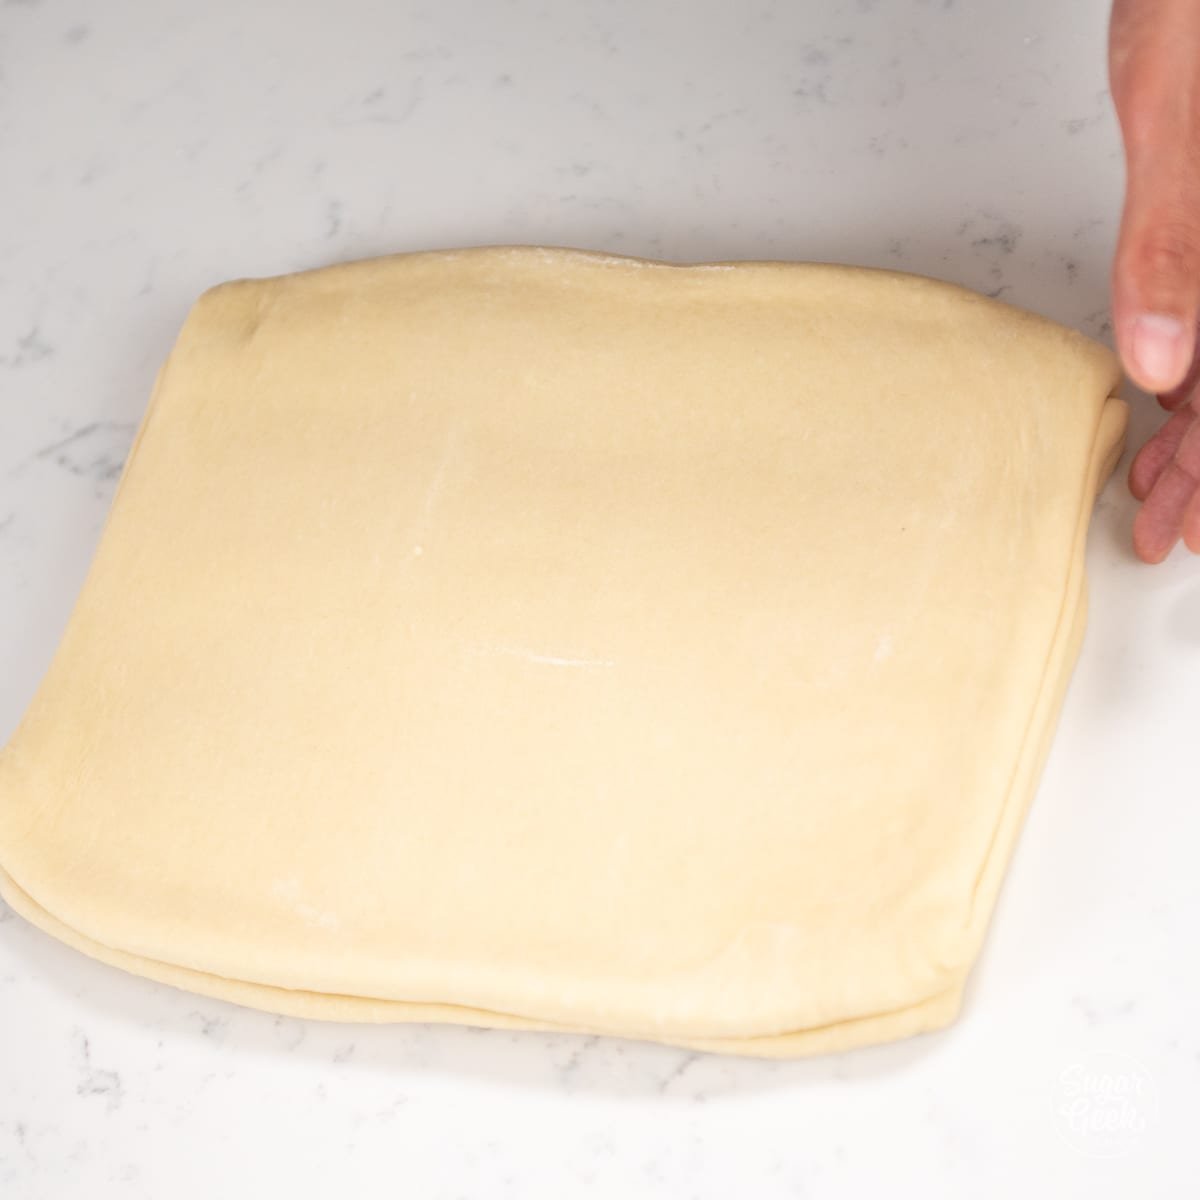 rectangle of croissant dough